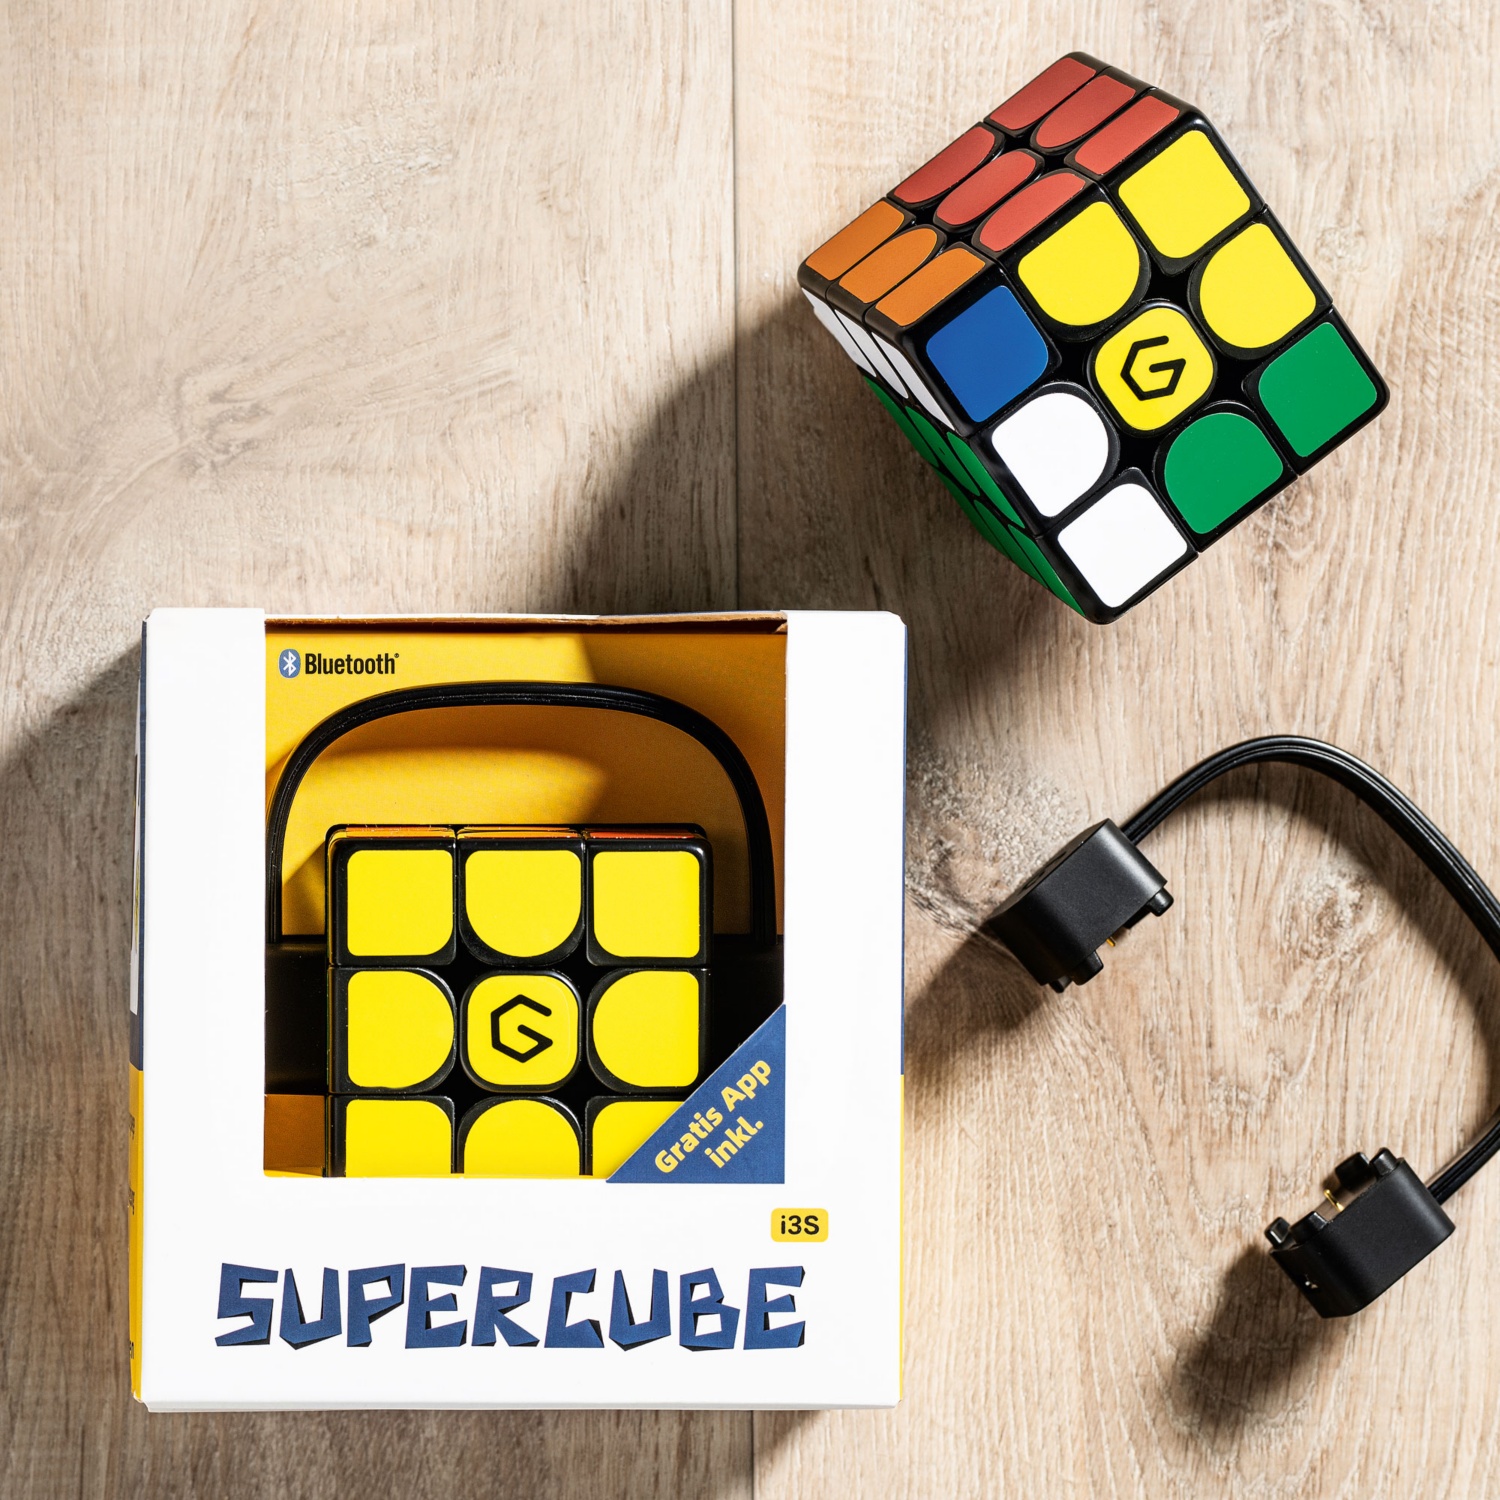 GIIKER Supercube Rubik's Cube